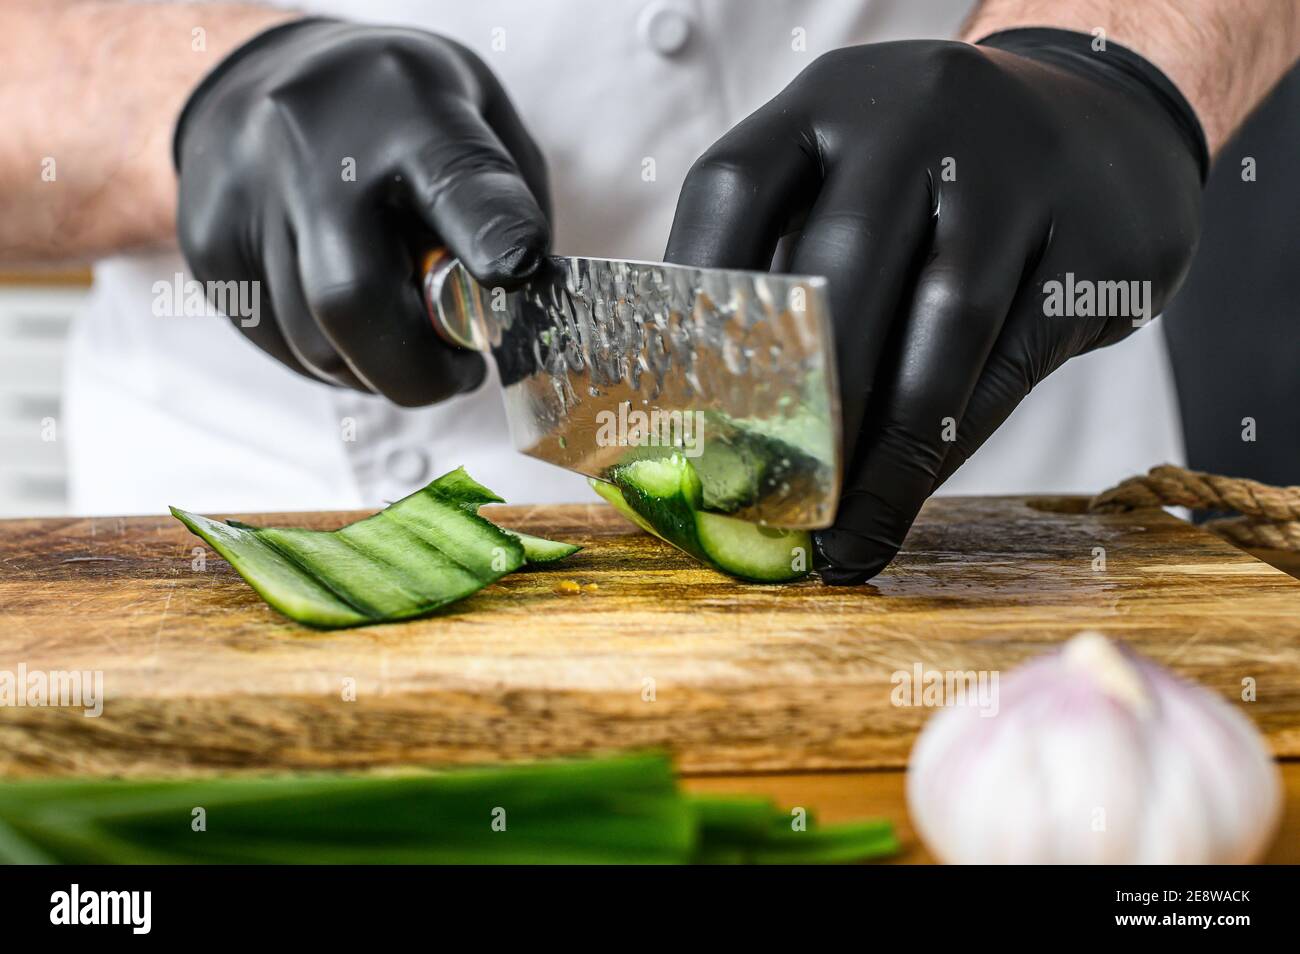 Un chef en guantes negros está cortando un pepino verde fresco en una tabla  de cortar de madera. Concepto de cocinar alimentos orgánicos saludables  Fotografía de stock - Alamy